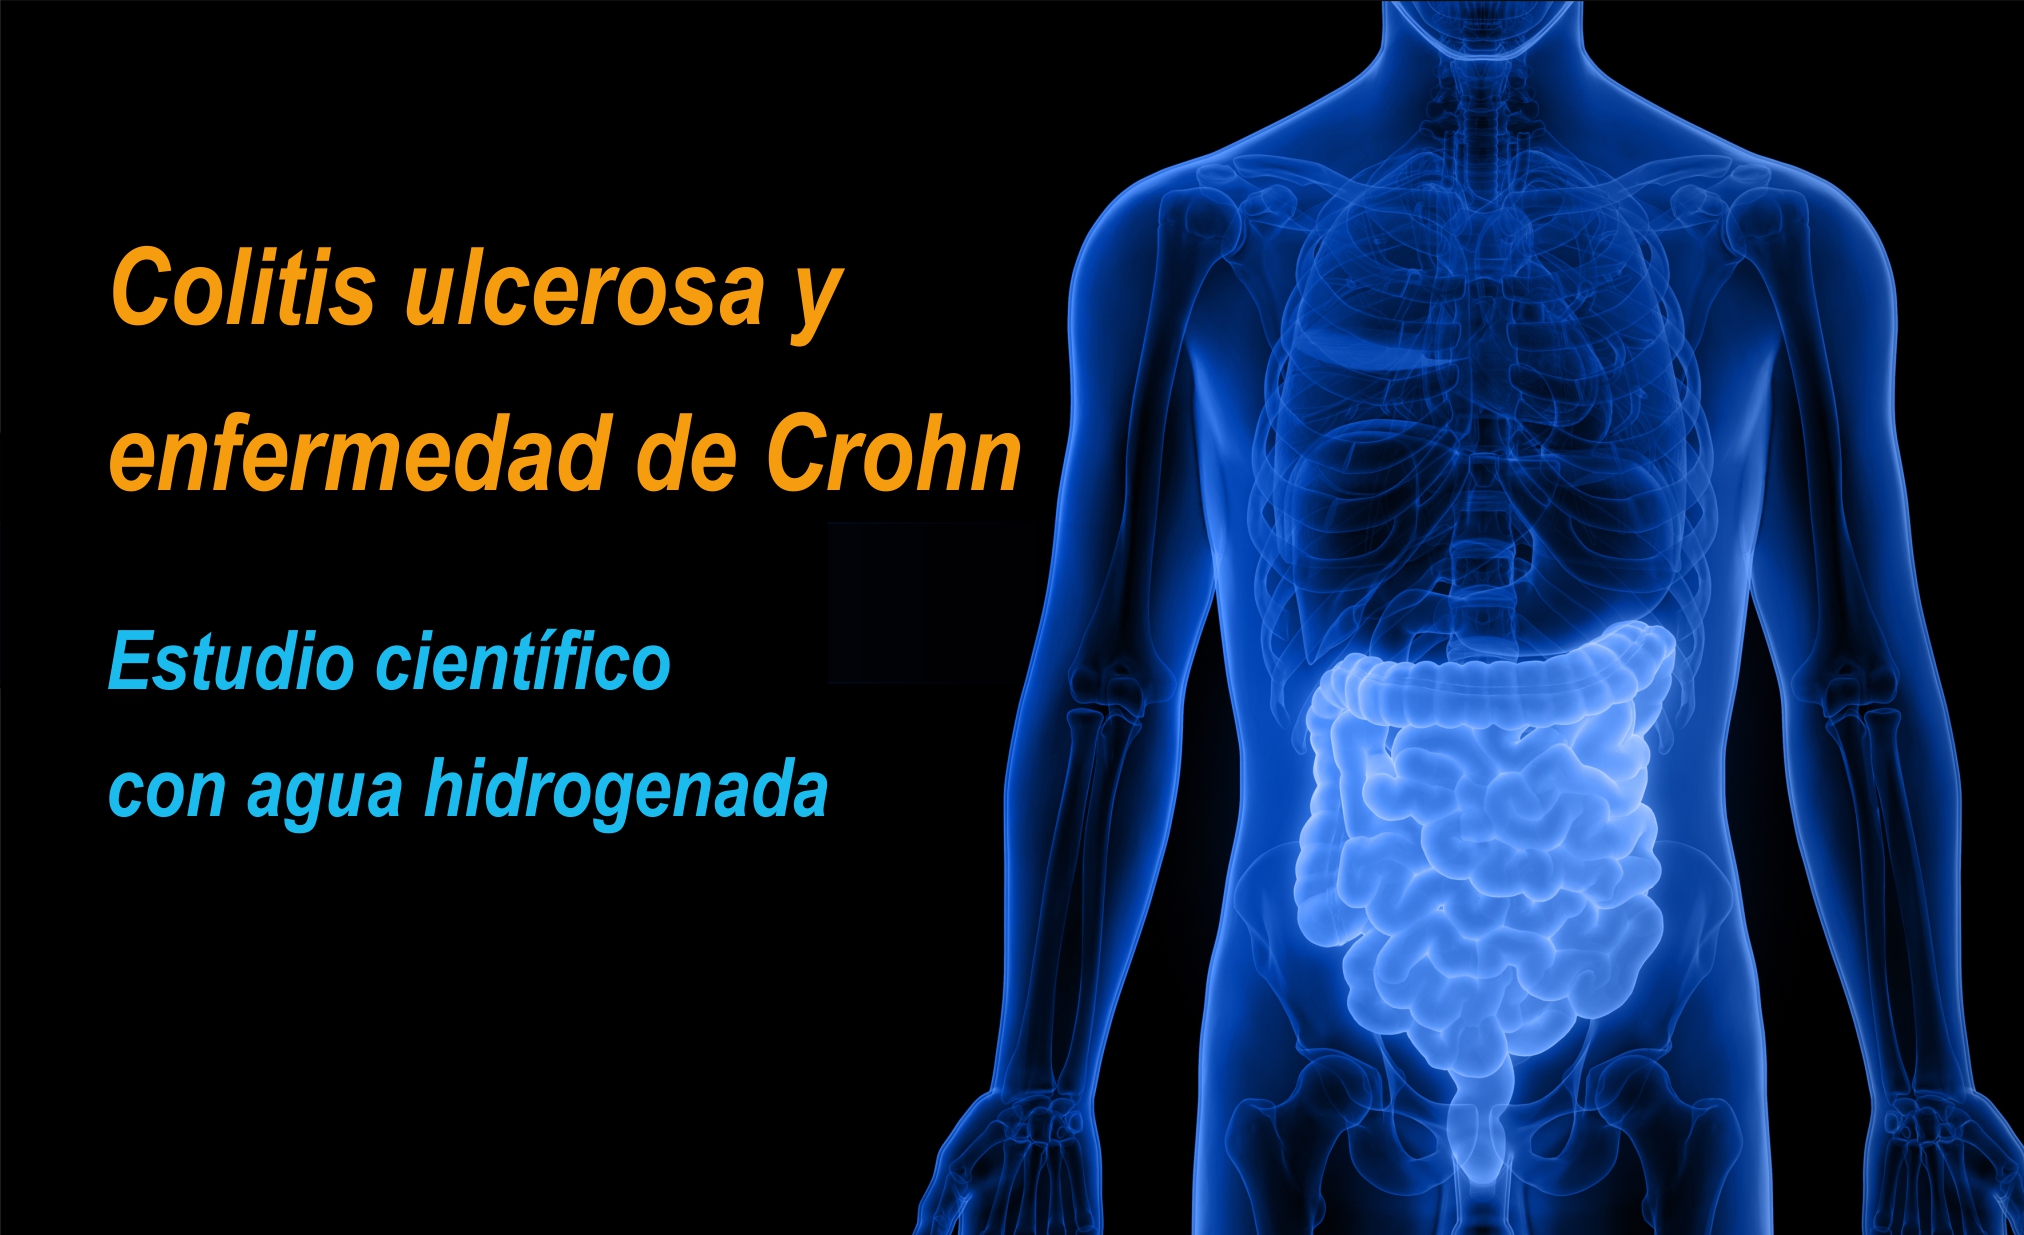 Beber agua hidrogenada protege contra colitis ulcerosa y enfermedad de Crohn